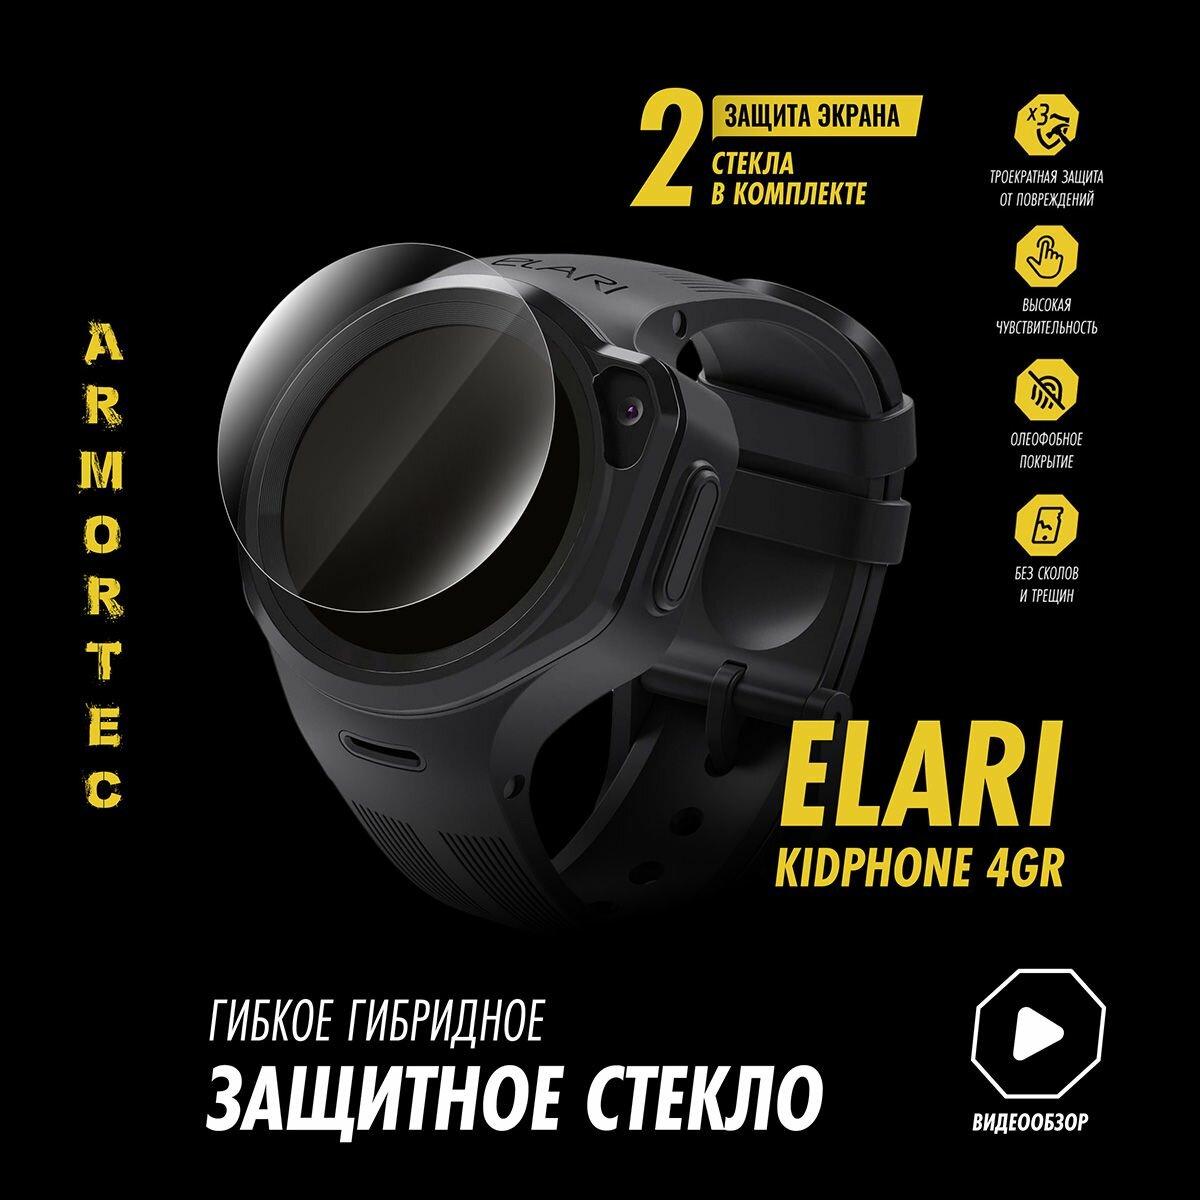 Защитное стекло на Elari KidPhone 4GR с Алисой гибридное ARMORTEC